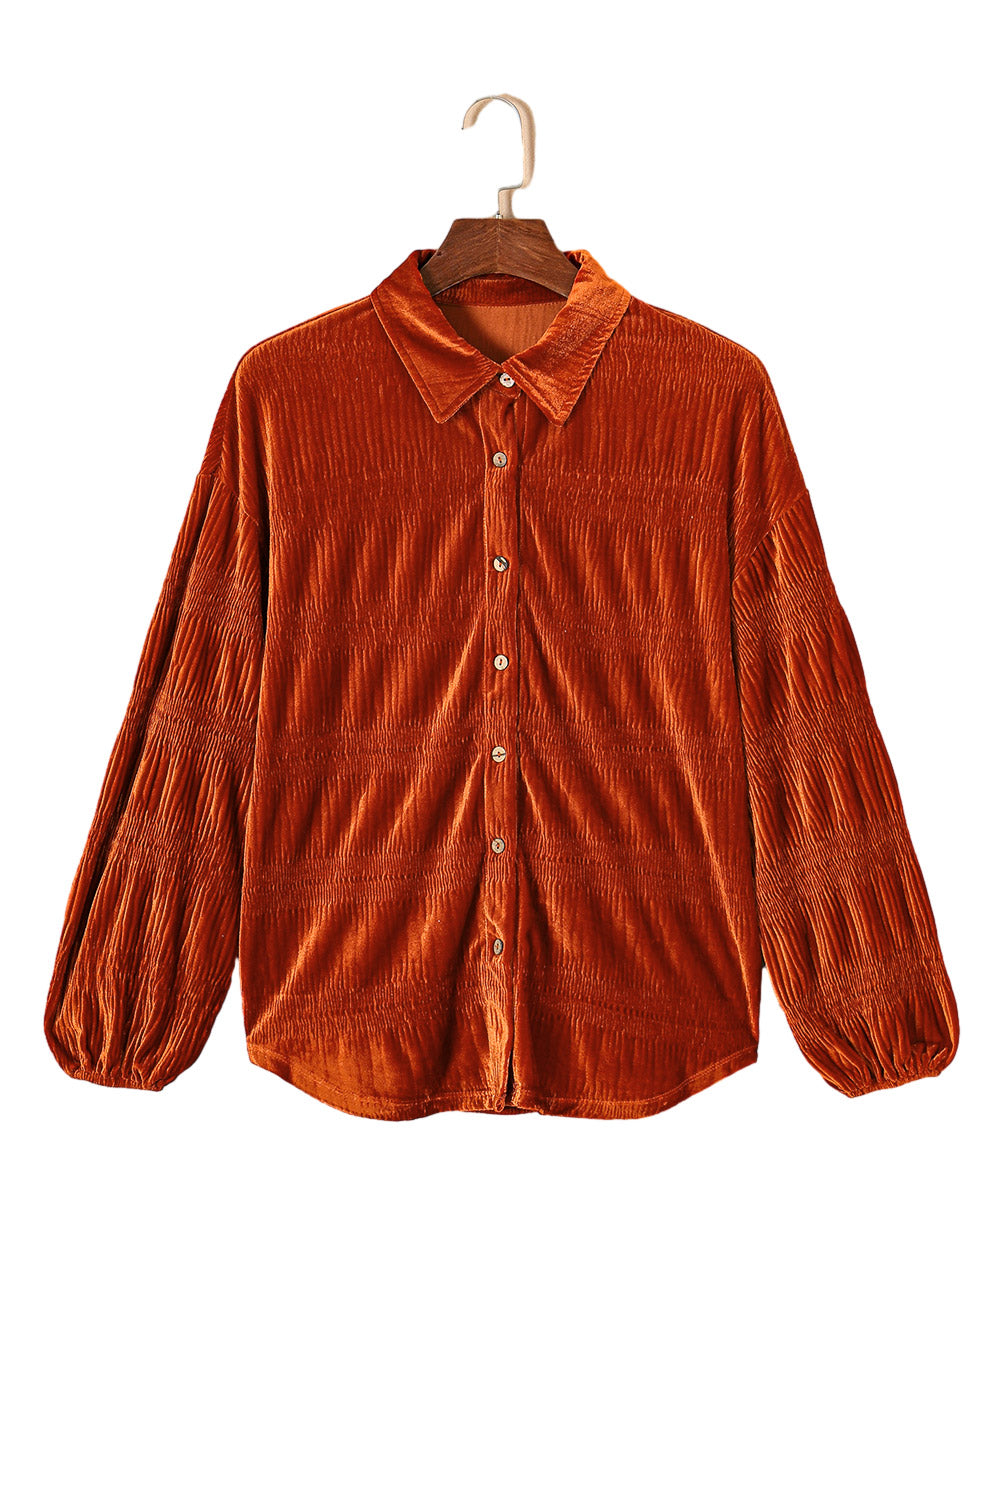 Chemise boutonnée en velours texturé de couleur unie marron